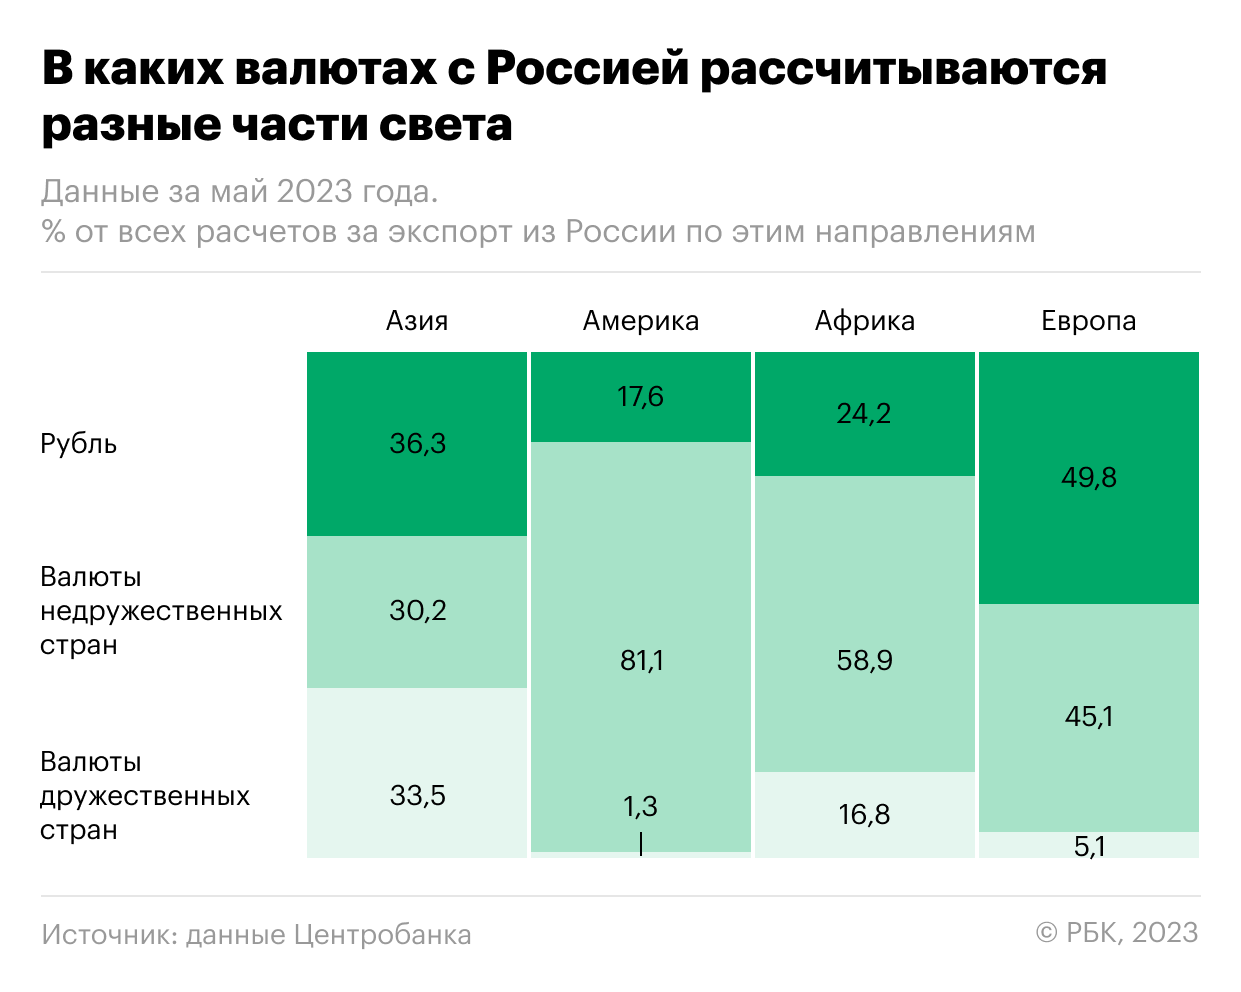 ₽, $, ₹: чем платят за экспорт из России в разных частях мира